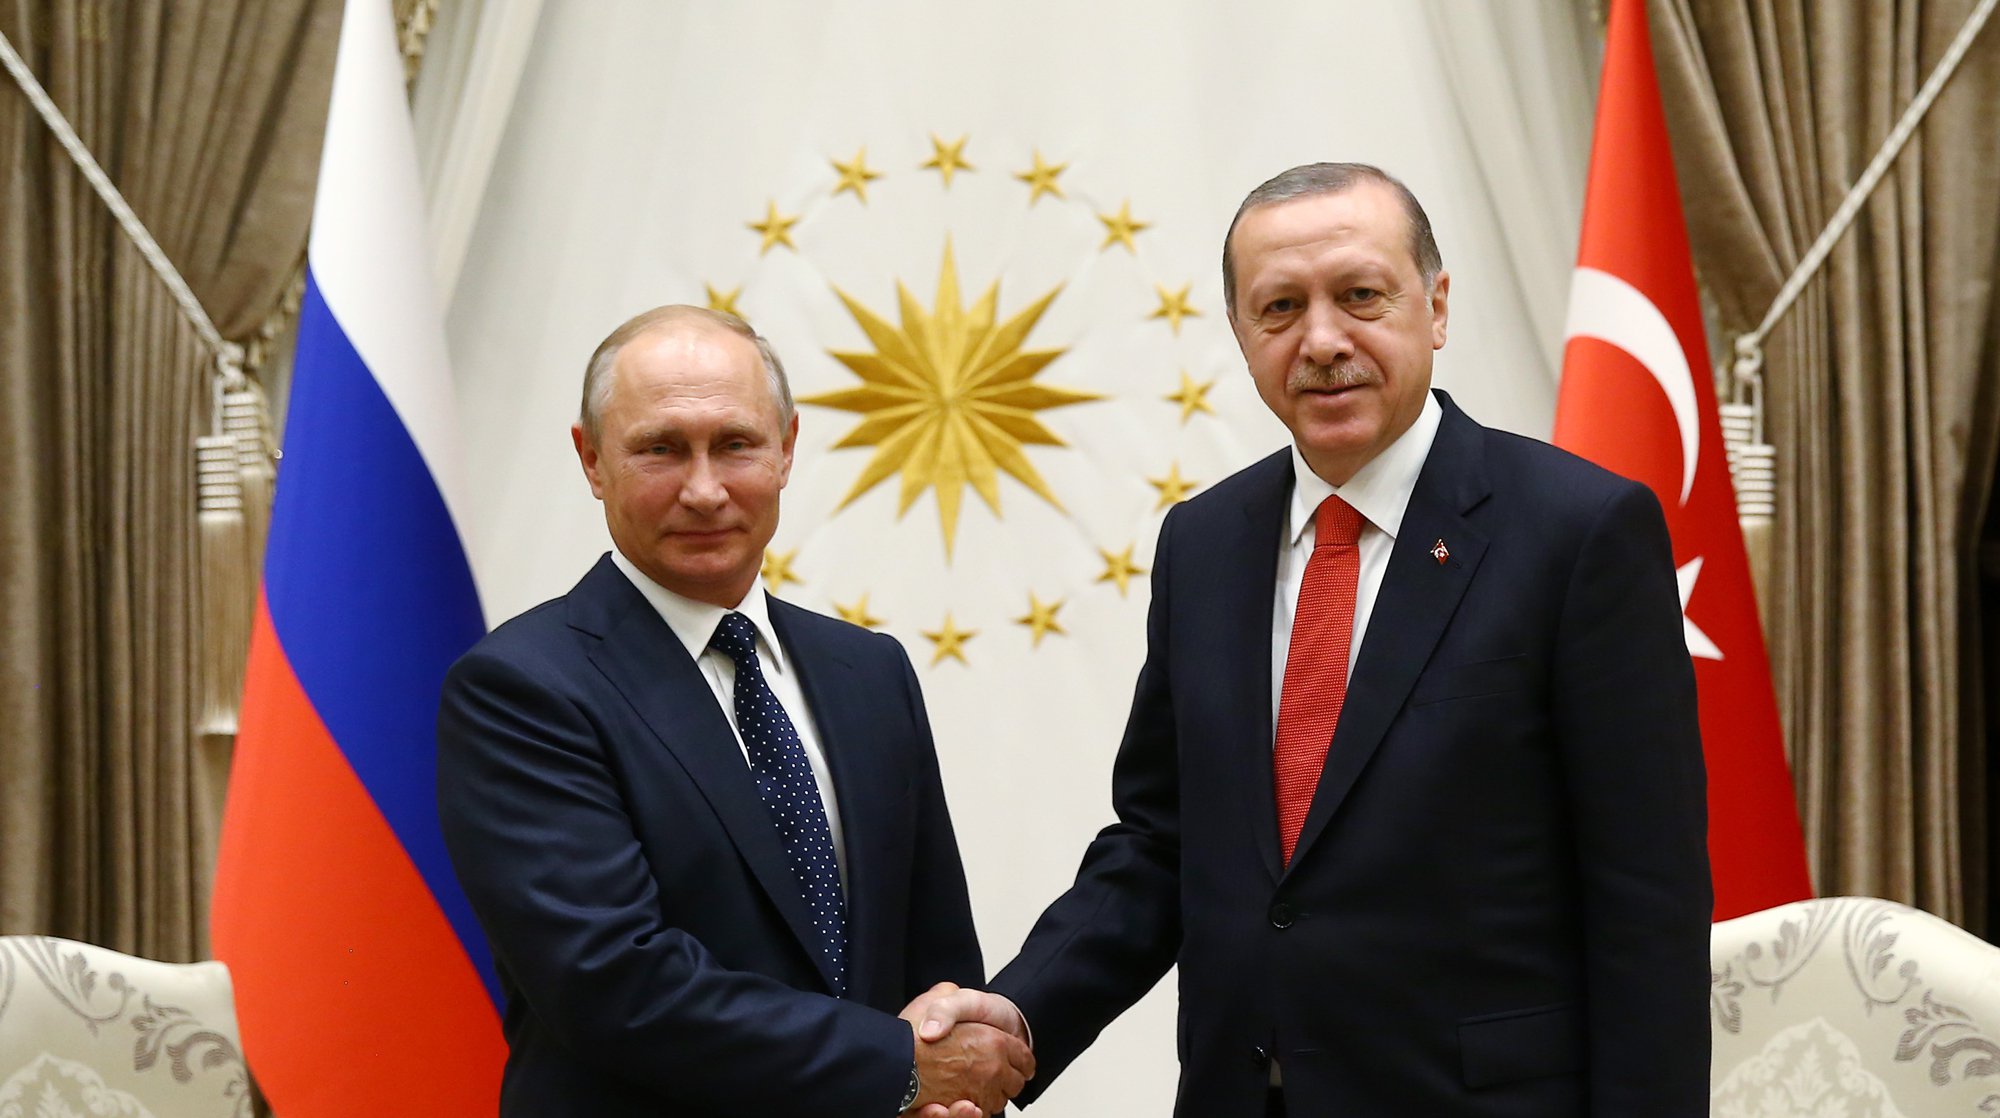 Dailystorm - Политика восточного базара: насколько устойчивы российско-турецкие отношения?